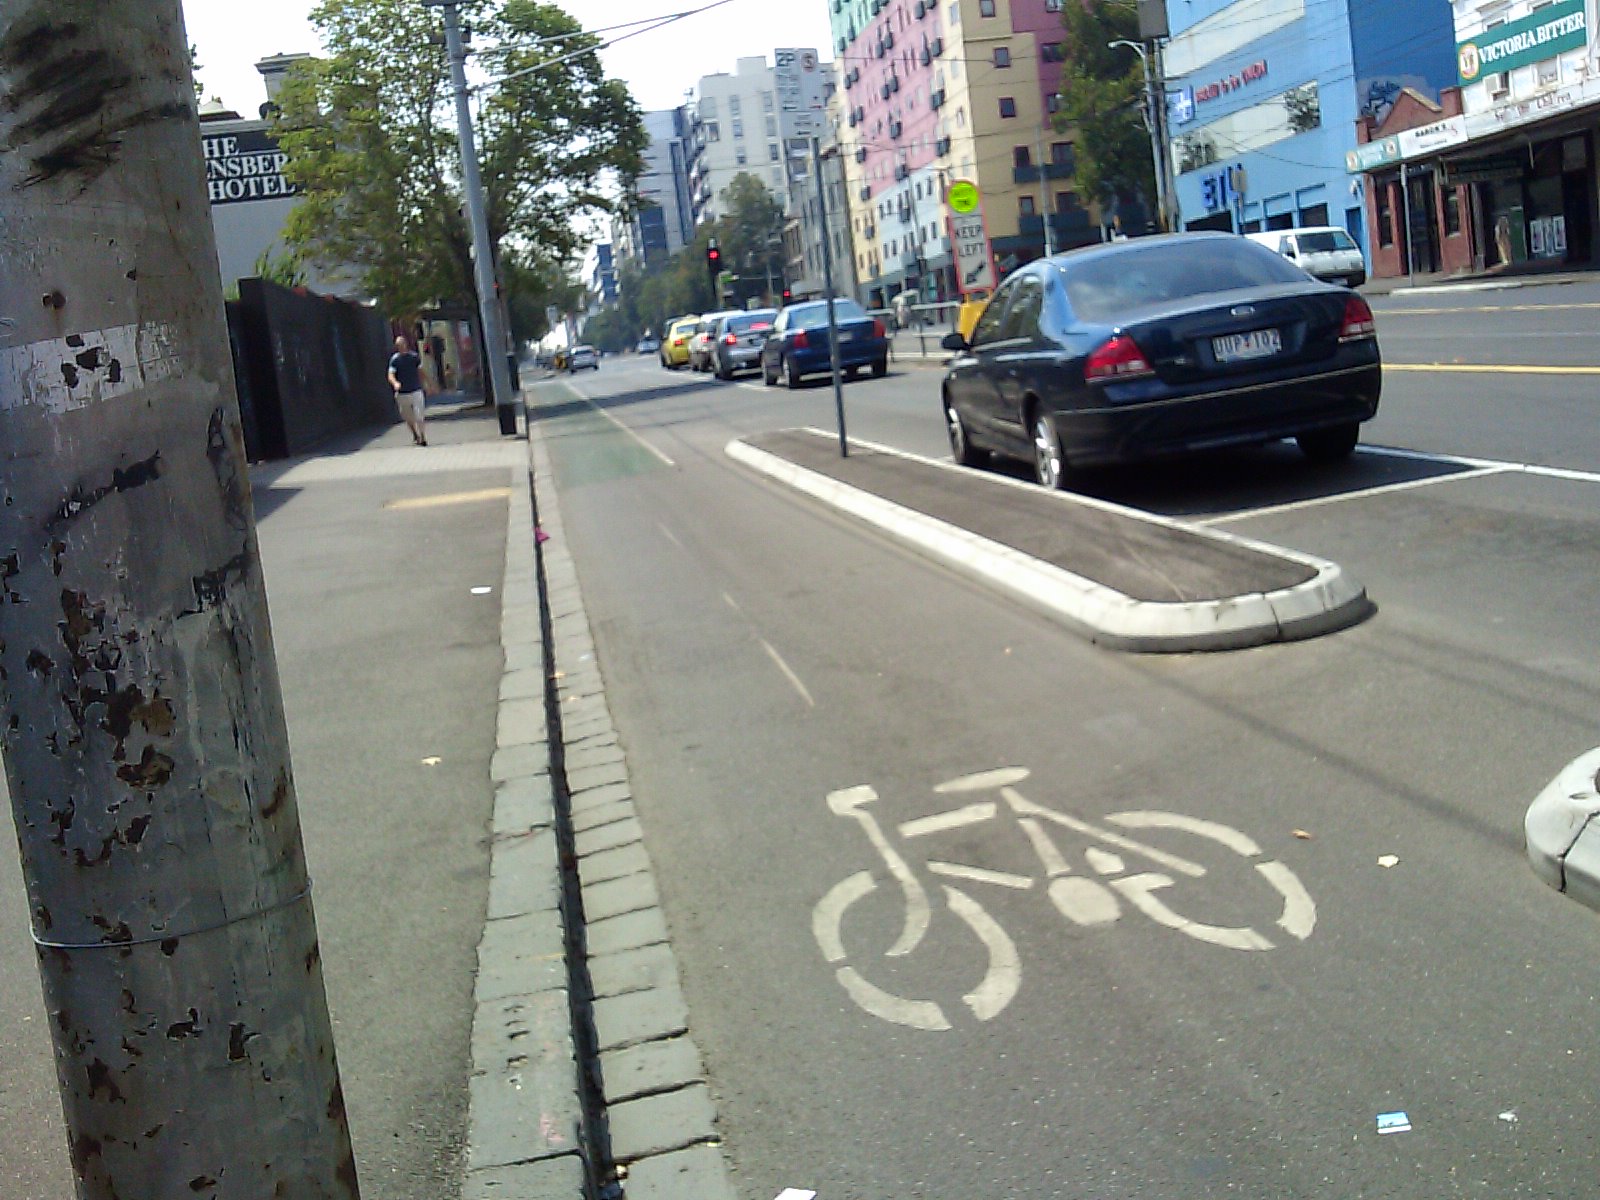 Bike lane. Bicycle Lane. Cycle Lane picture.